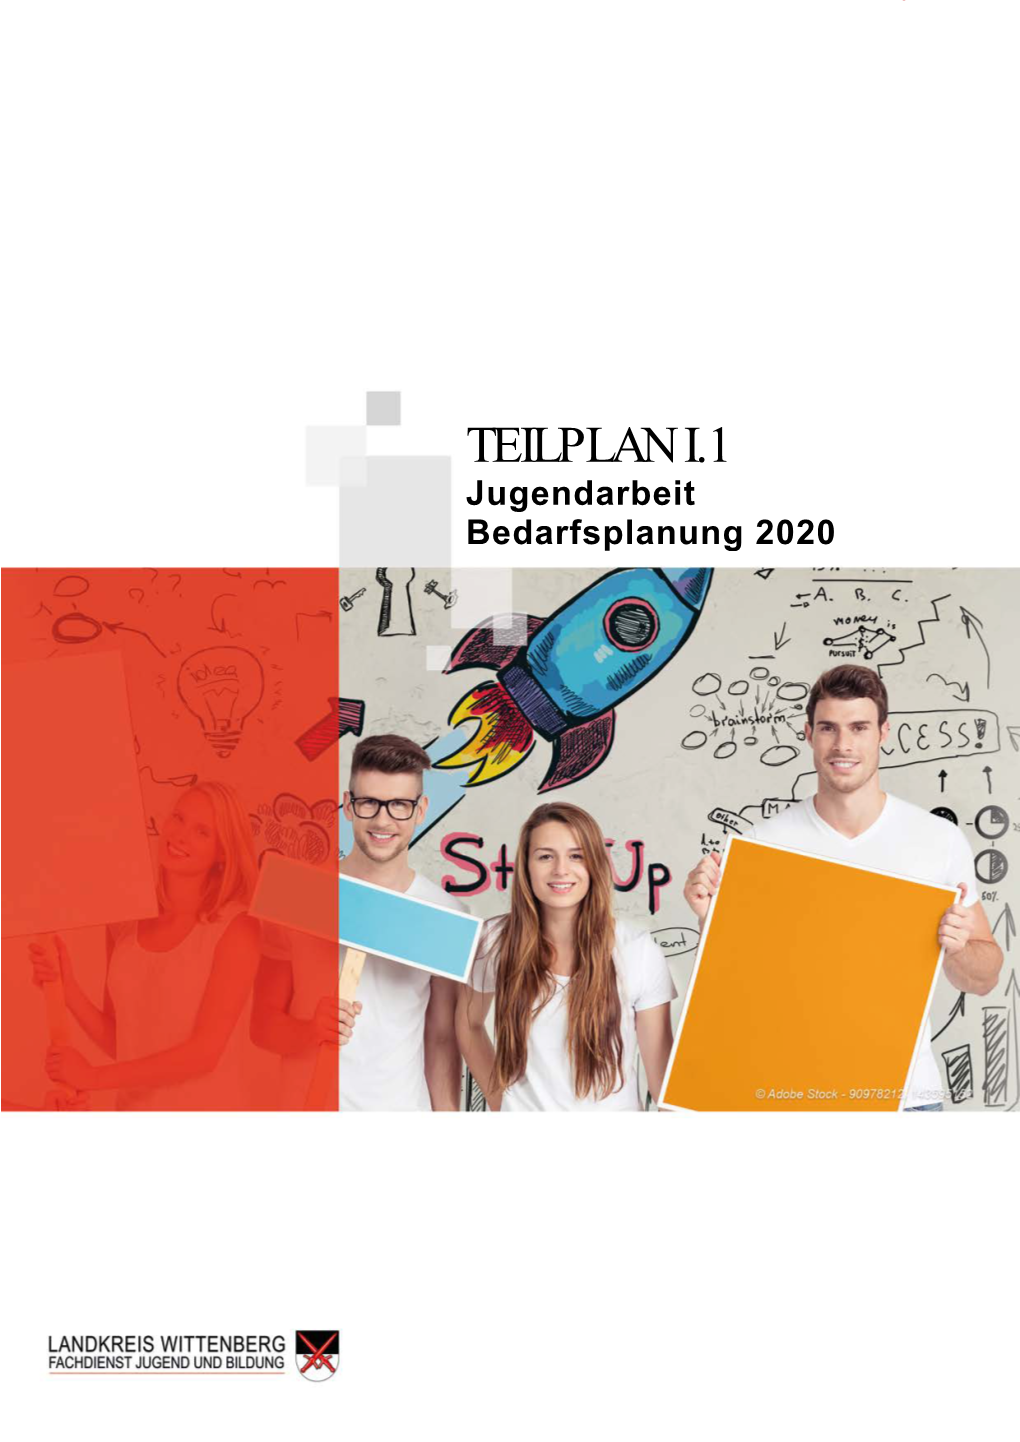 TEILPLAN I.1 Jugendarbeit Bedarfsplanung 2020